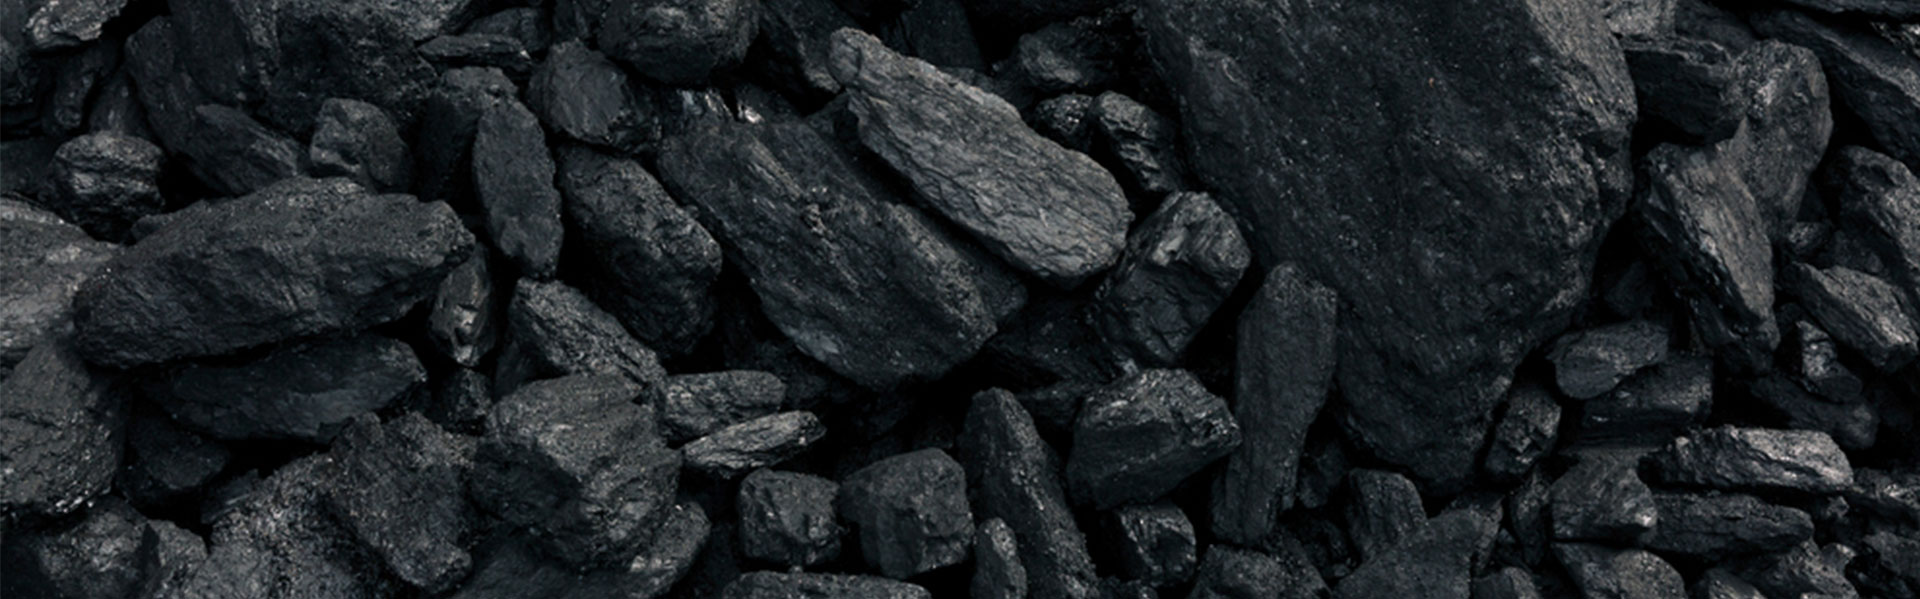 خرید زغال سنگ کک شو